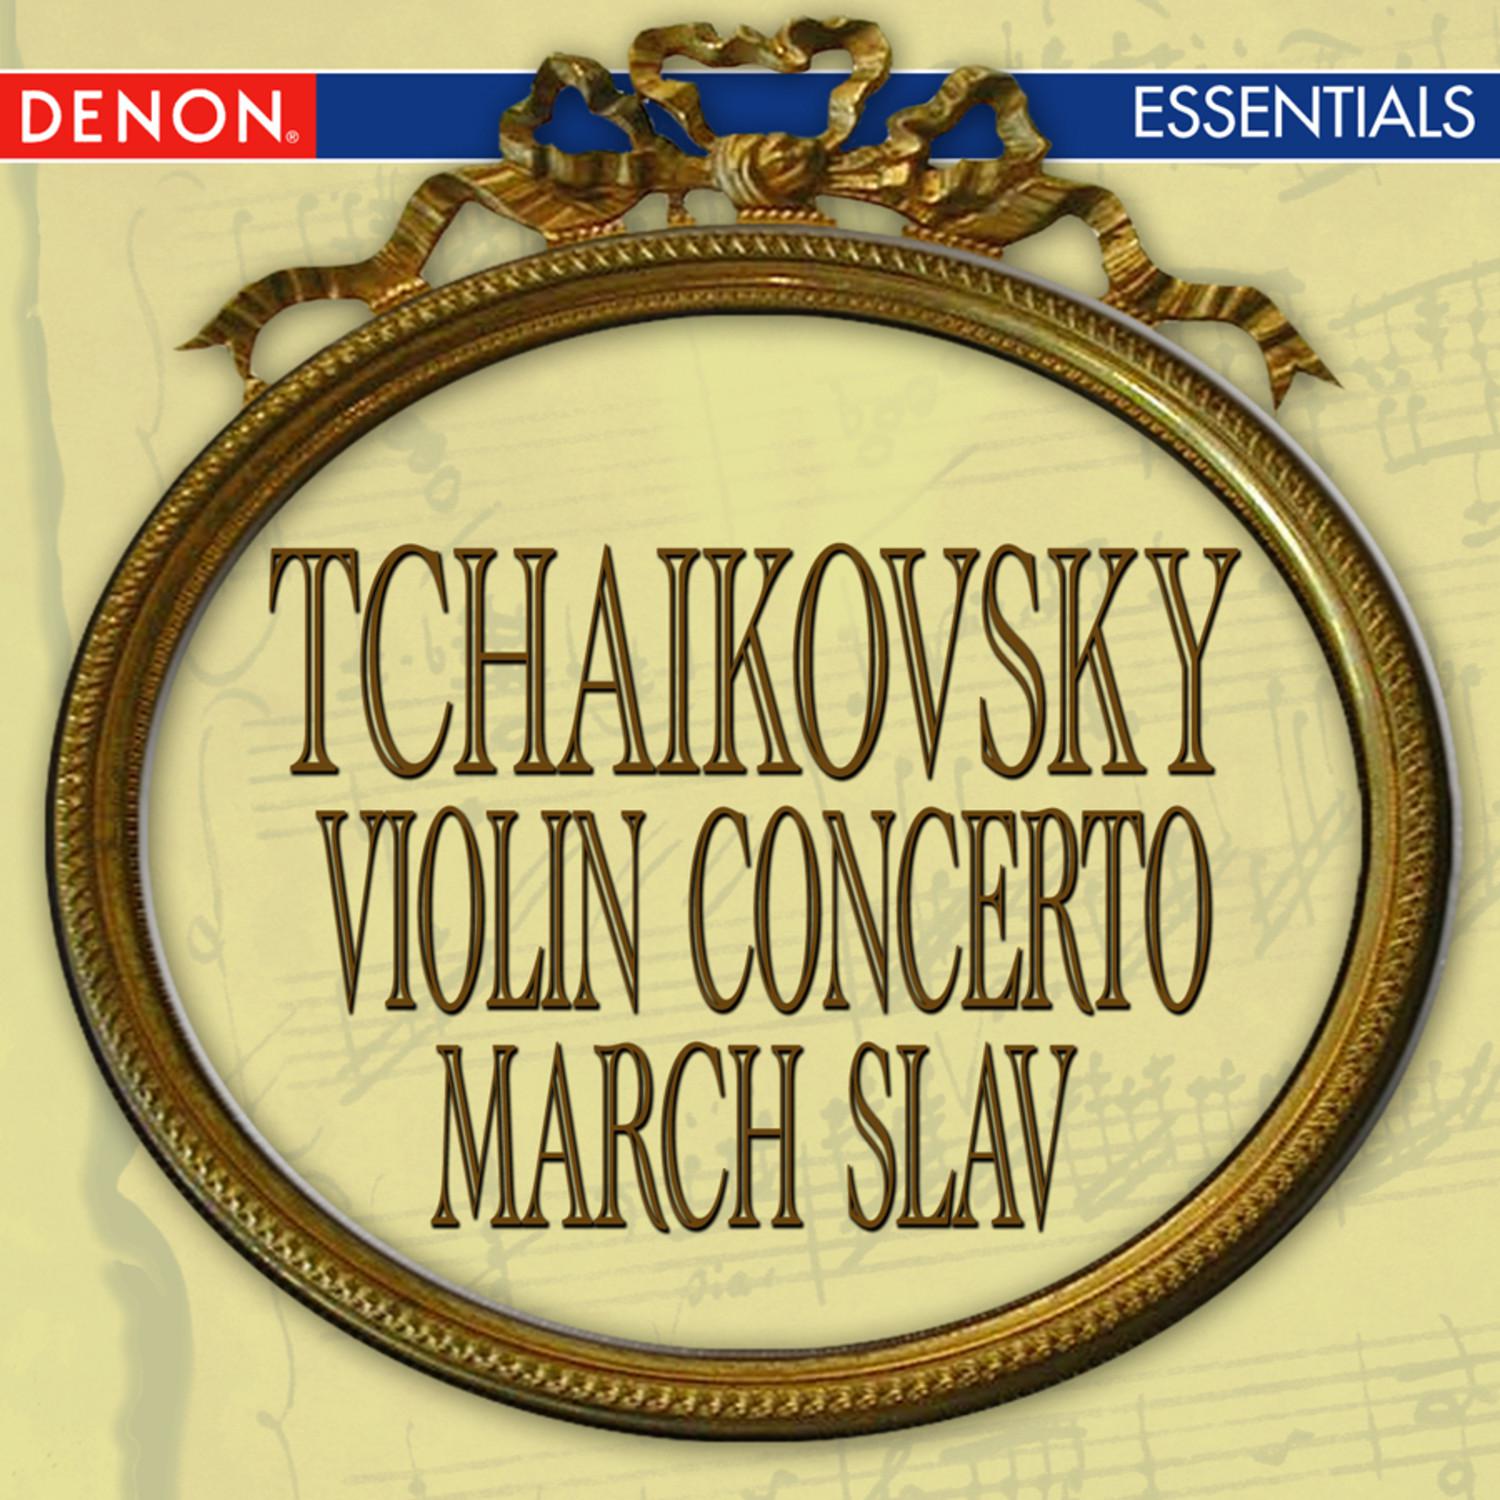 Concerto for Violin in D Major, Op. 35: I. Allegro moderato